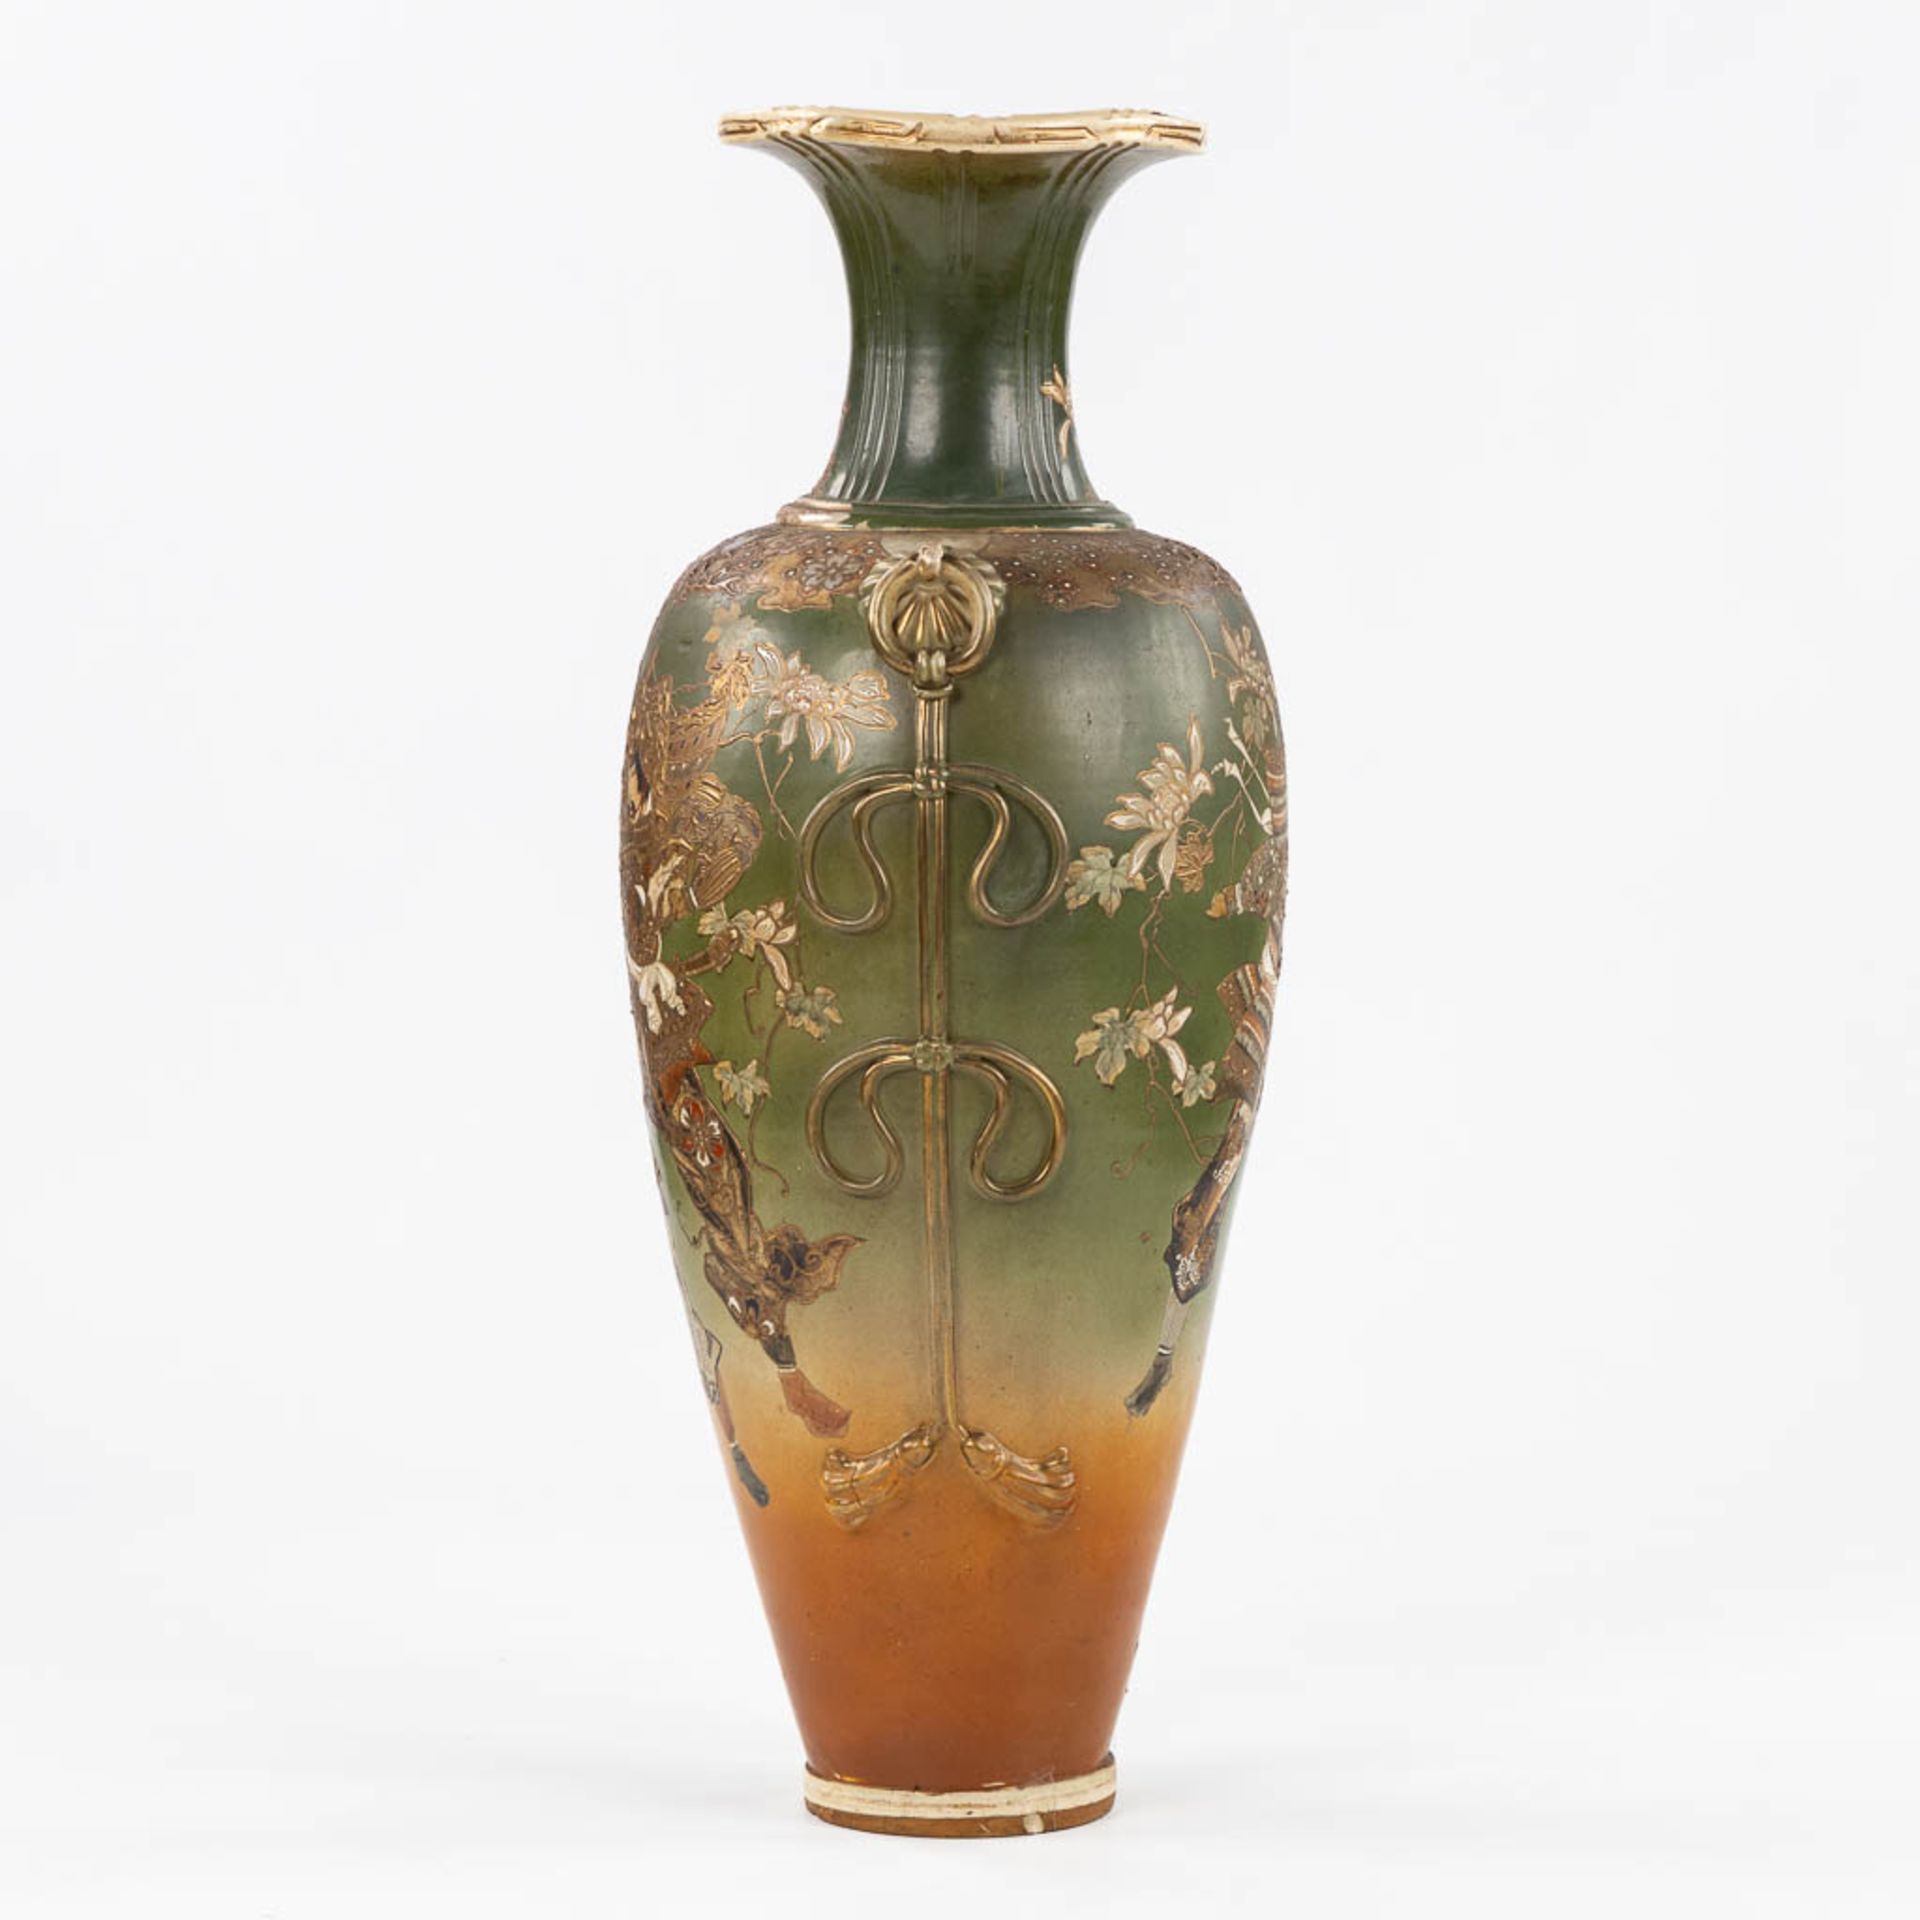 A decorative Japanese vase with Warrior scène. (H:89 x D:35 cm) - Image 5 of 9